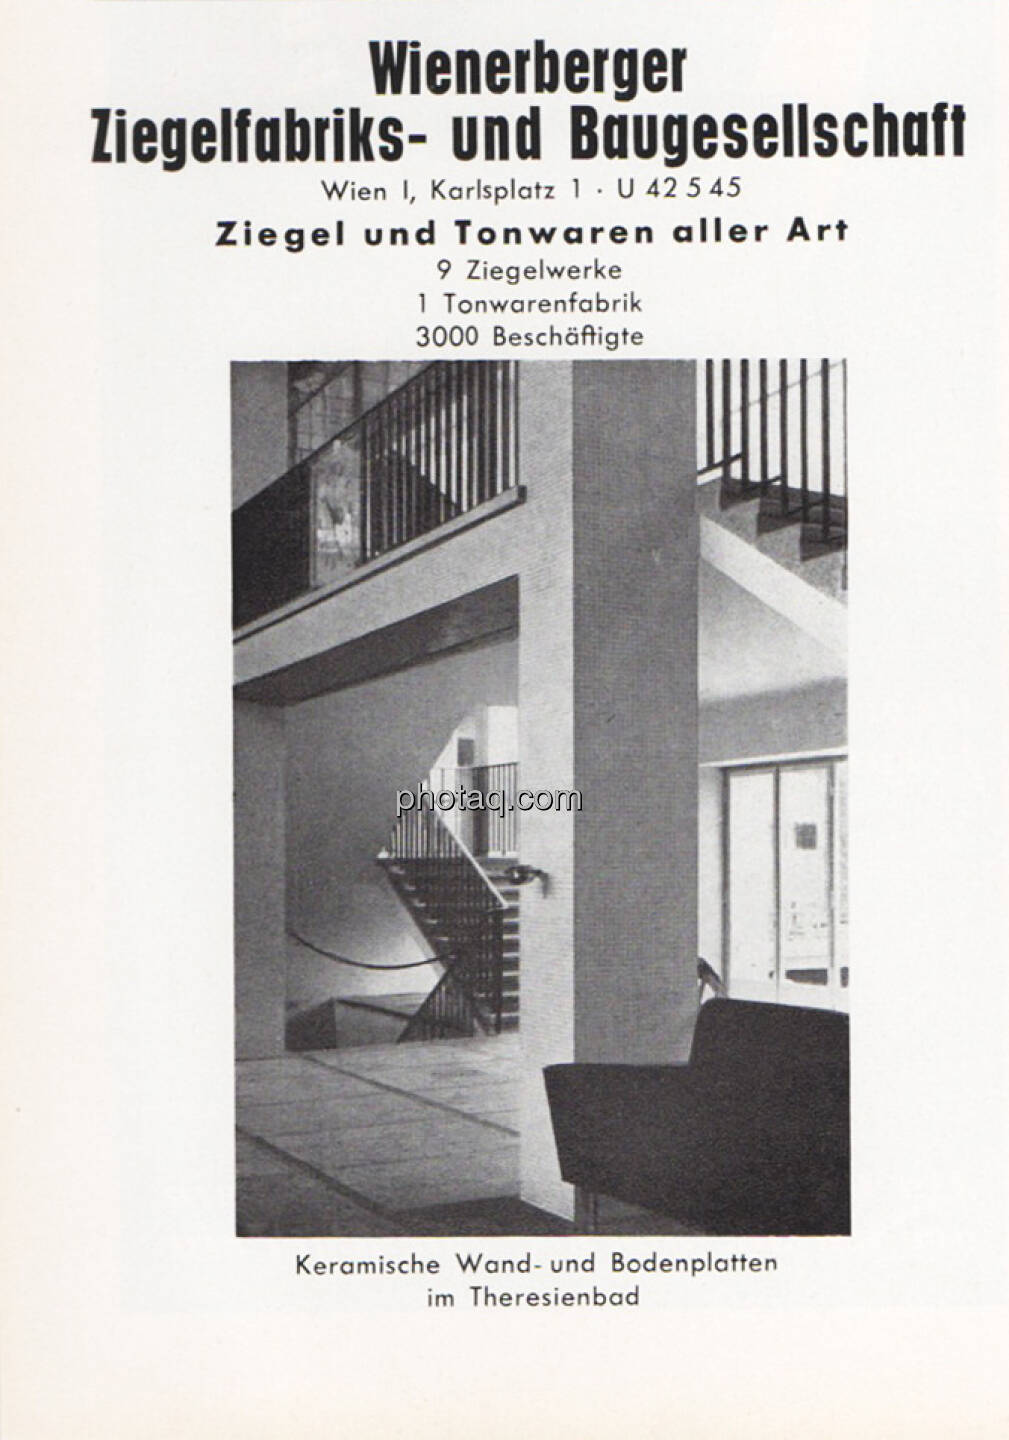 Wienerberger Werbung 1956, 3000 Beschäftigte